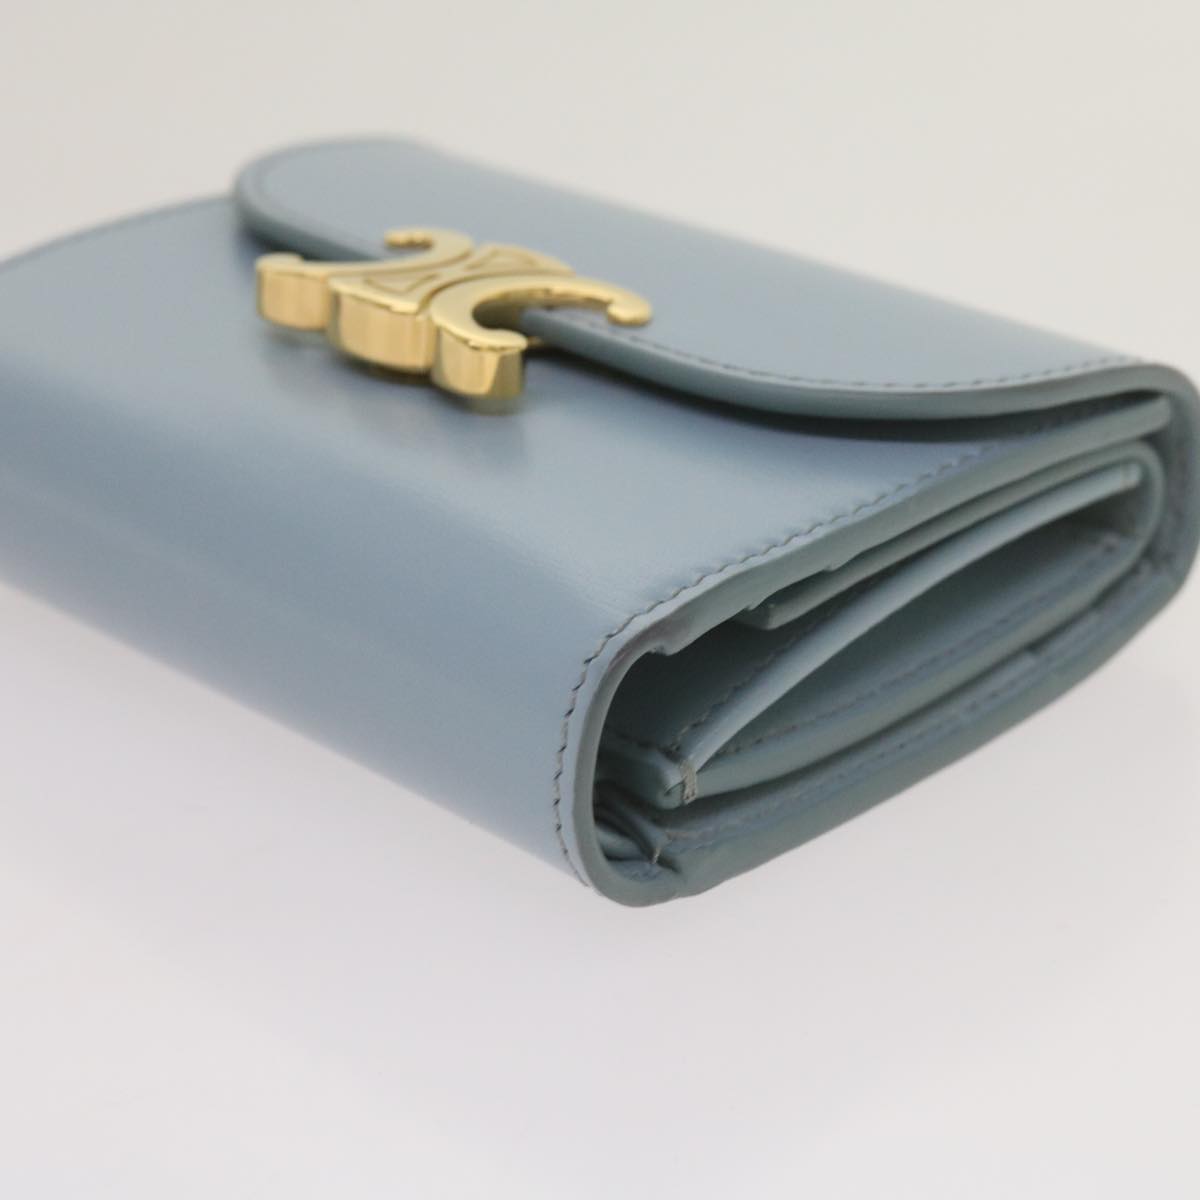 CELINE Wallet Leather Light Blue 10D783DPV Auth 66844A